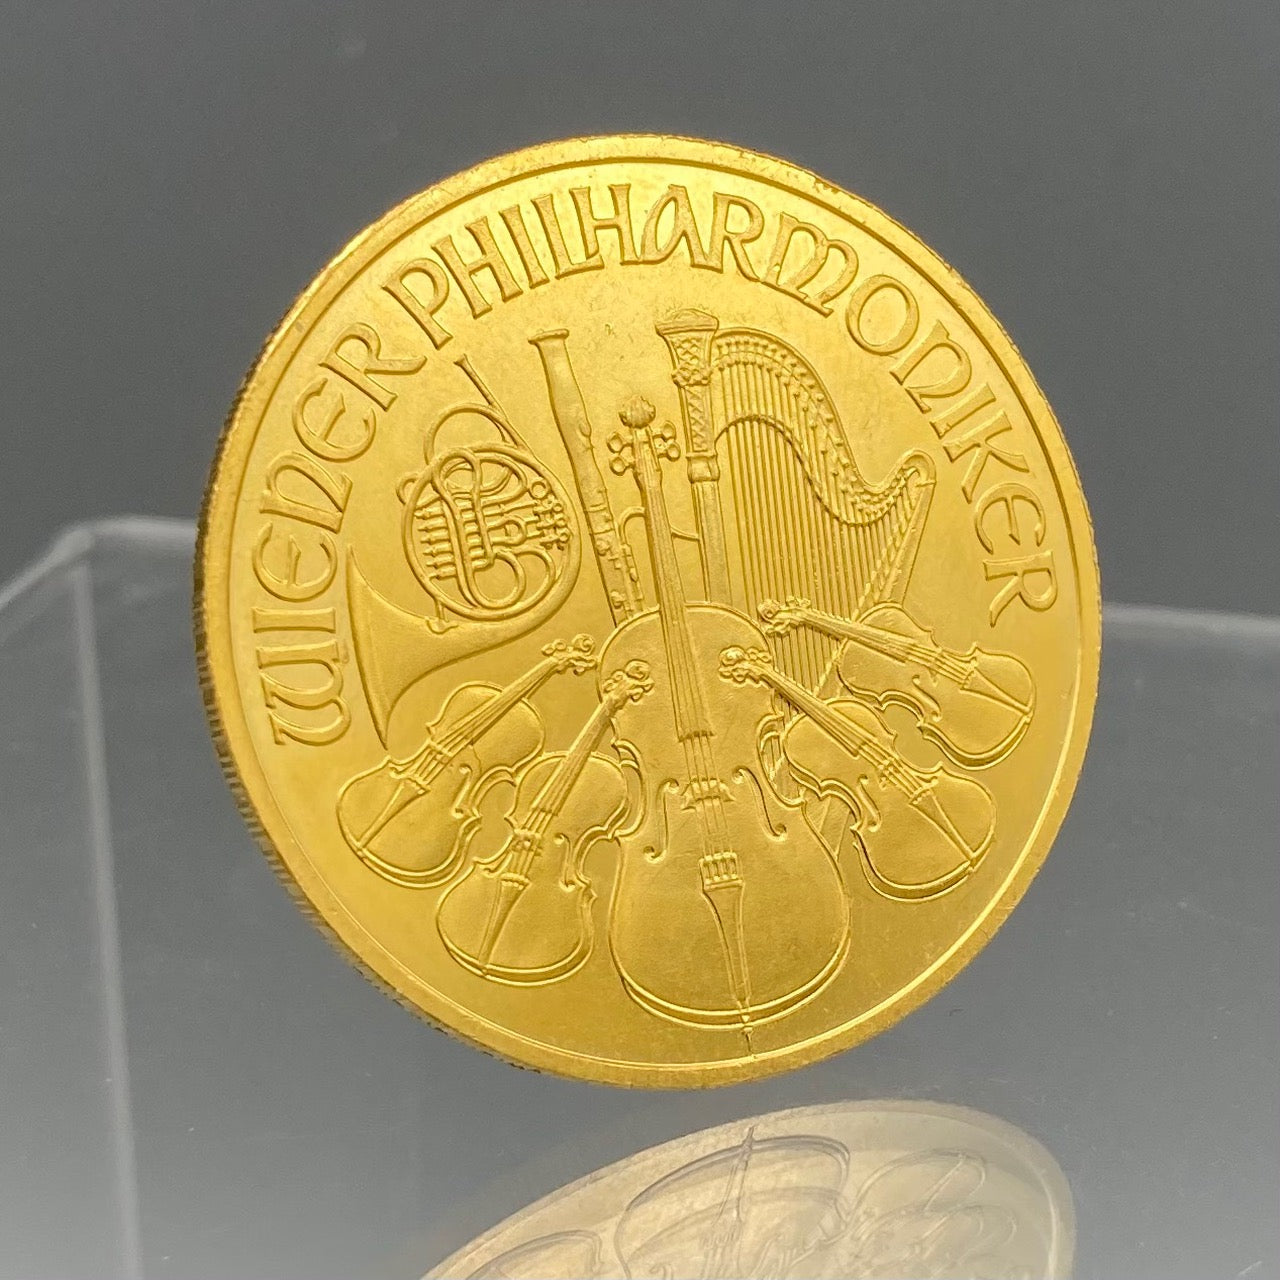 Pièce d'Or Philharmonique Autrichienne 2009 de 1 once (PRIX SUR DEMANDE)